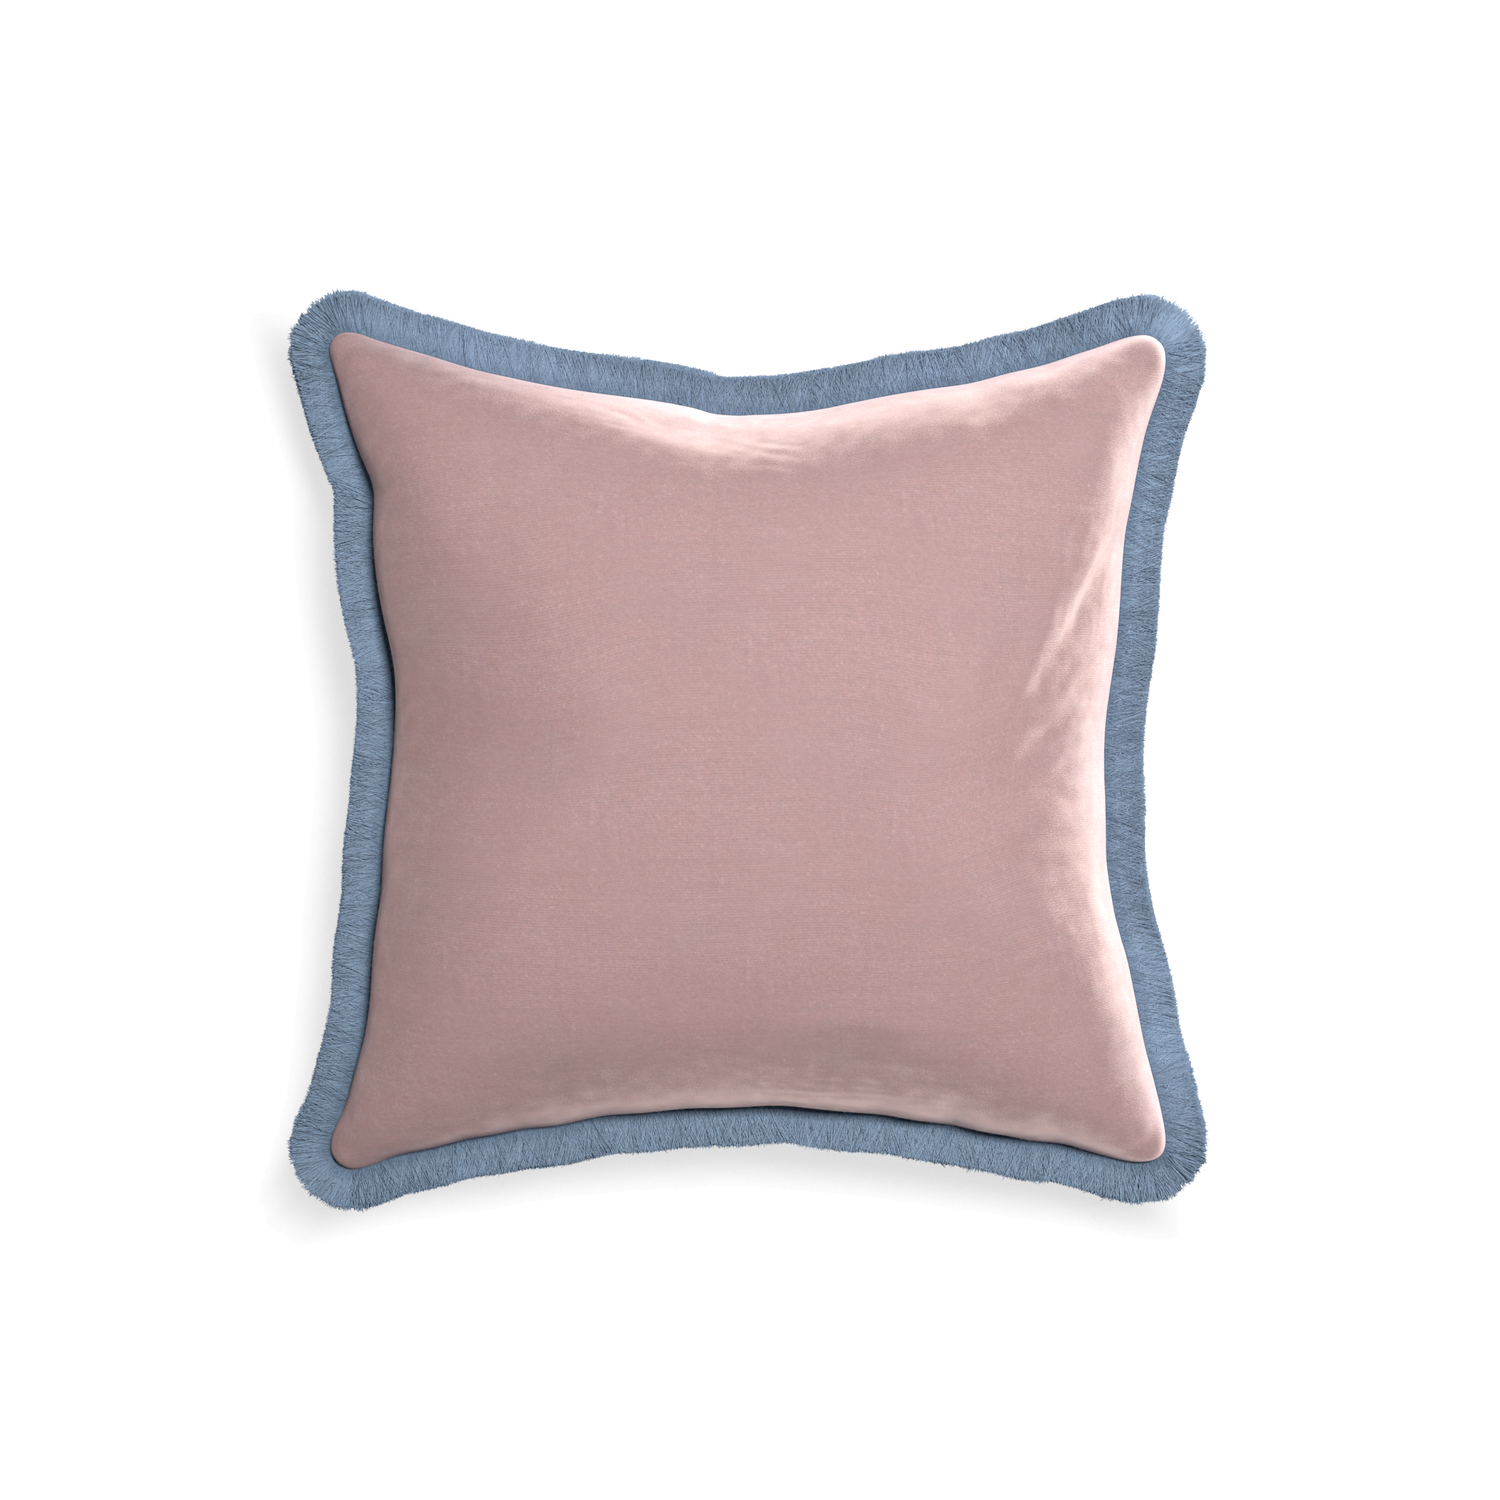 square mauve velvet pillow with sky blue fringe